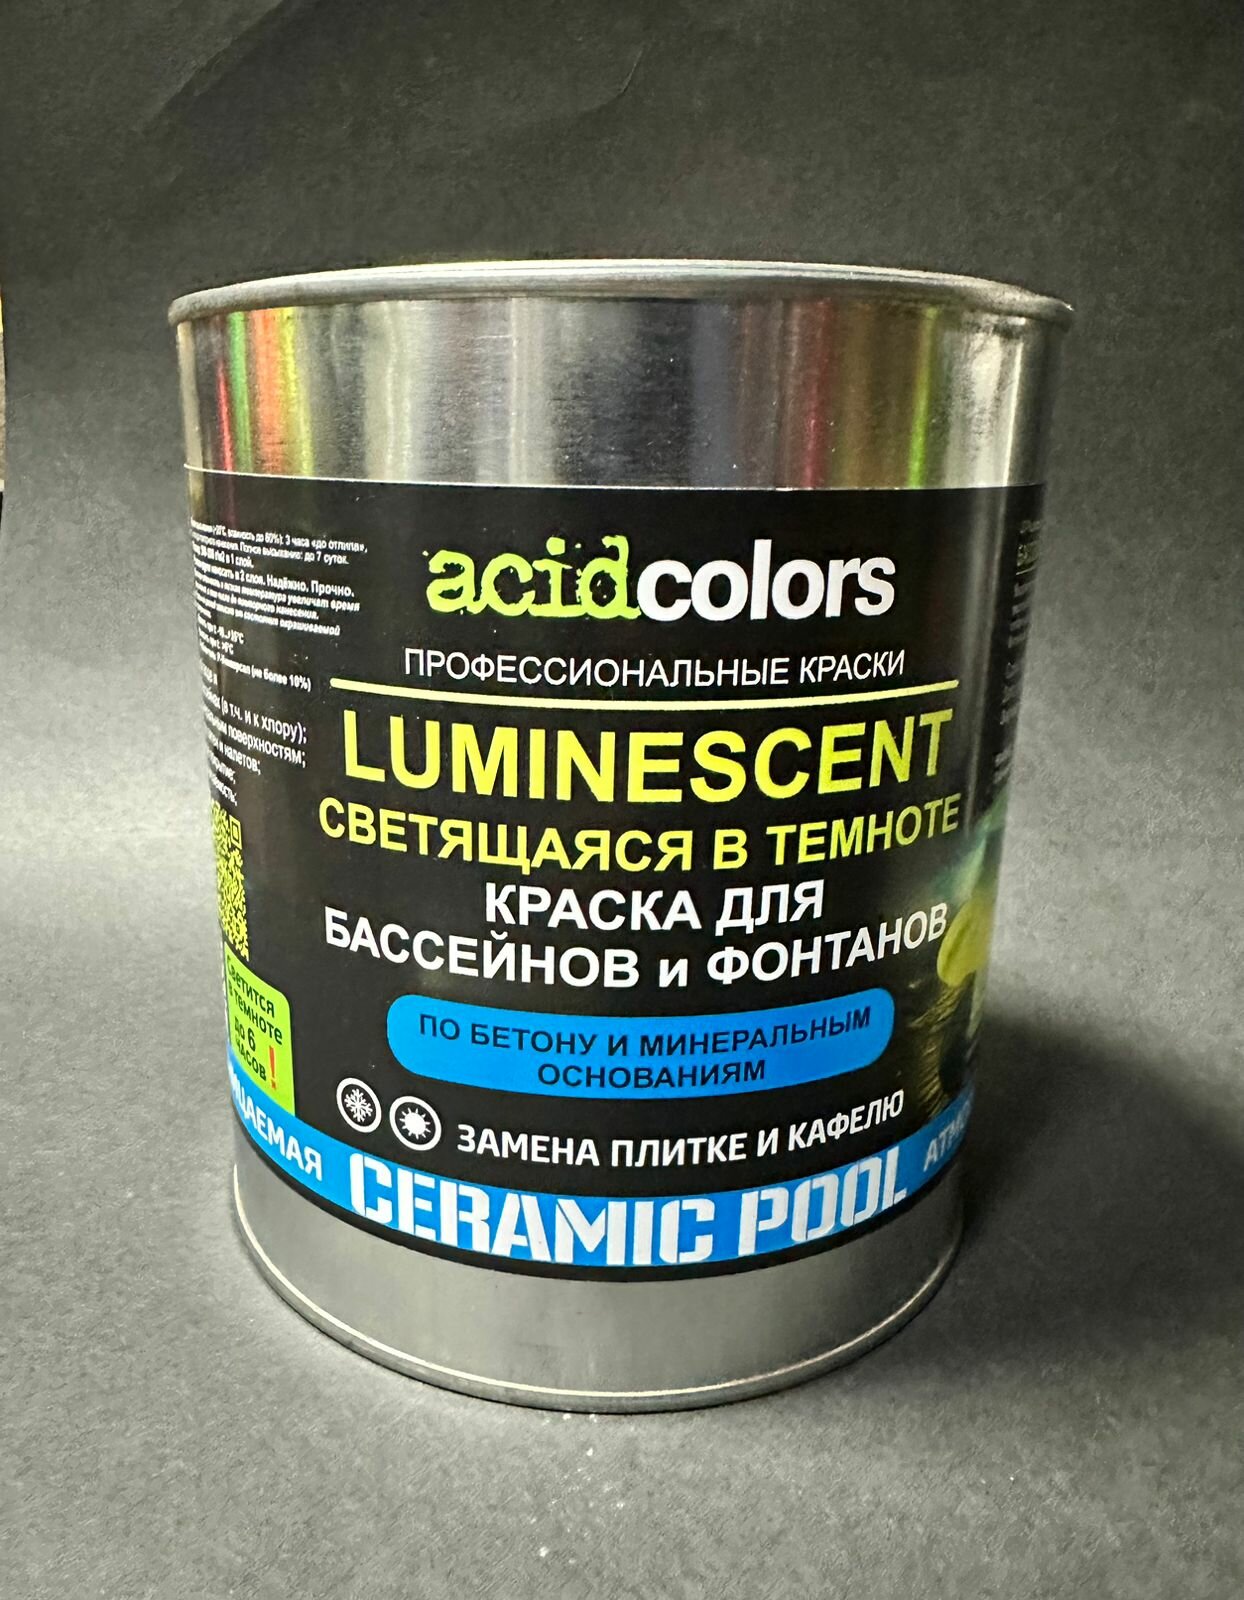 Краска для бассейна и фонтана, светящаяся в темноте Acidcolors Luminescent, 3 кг синяя